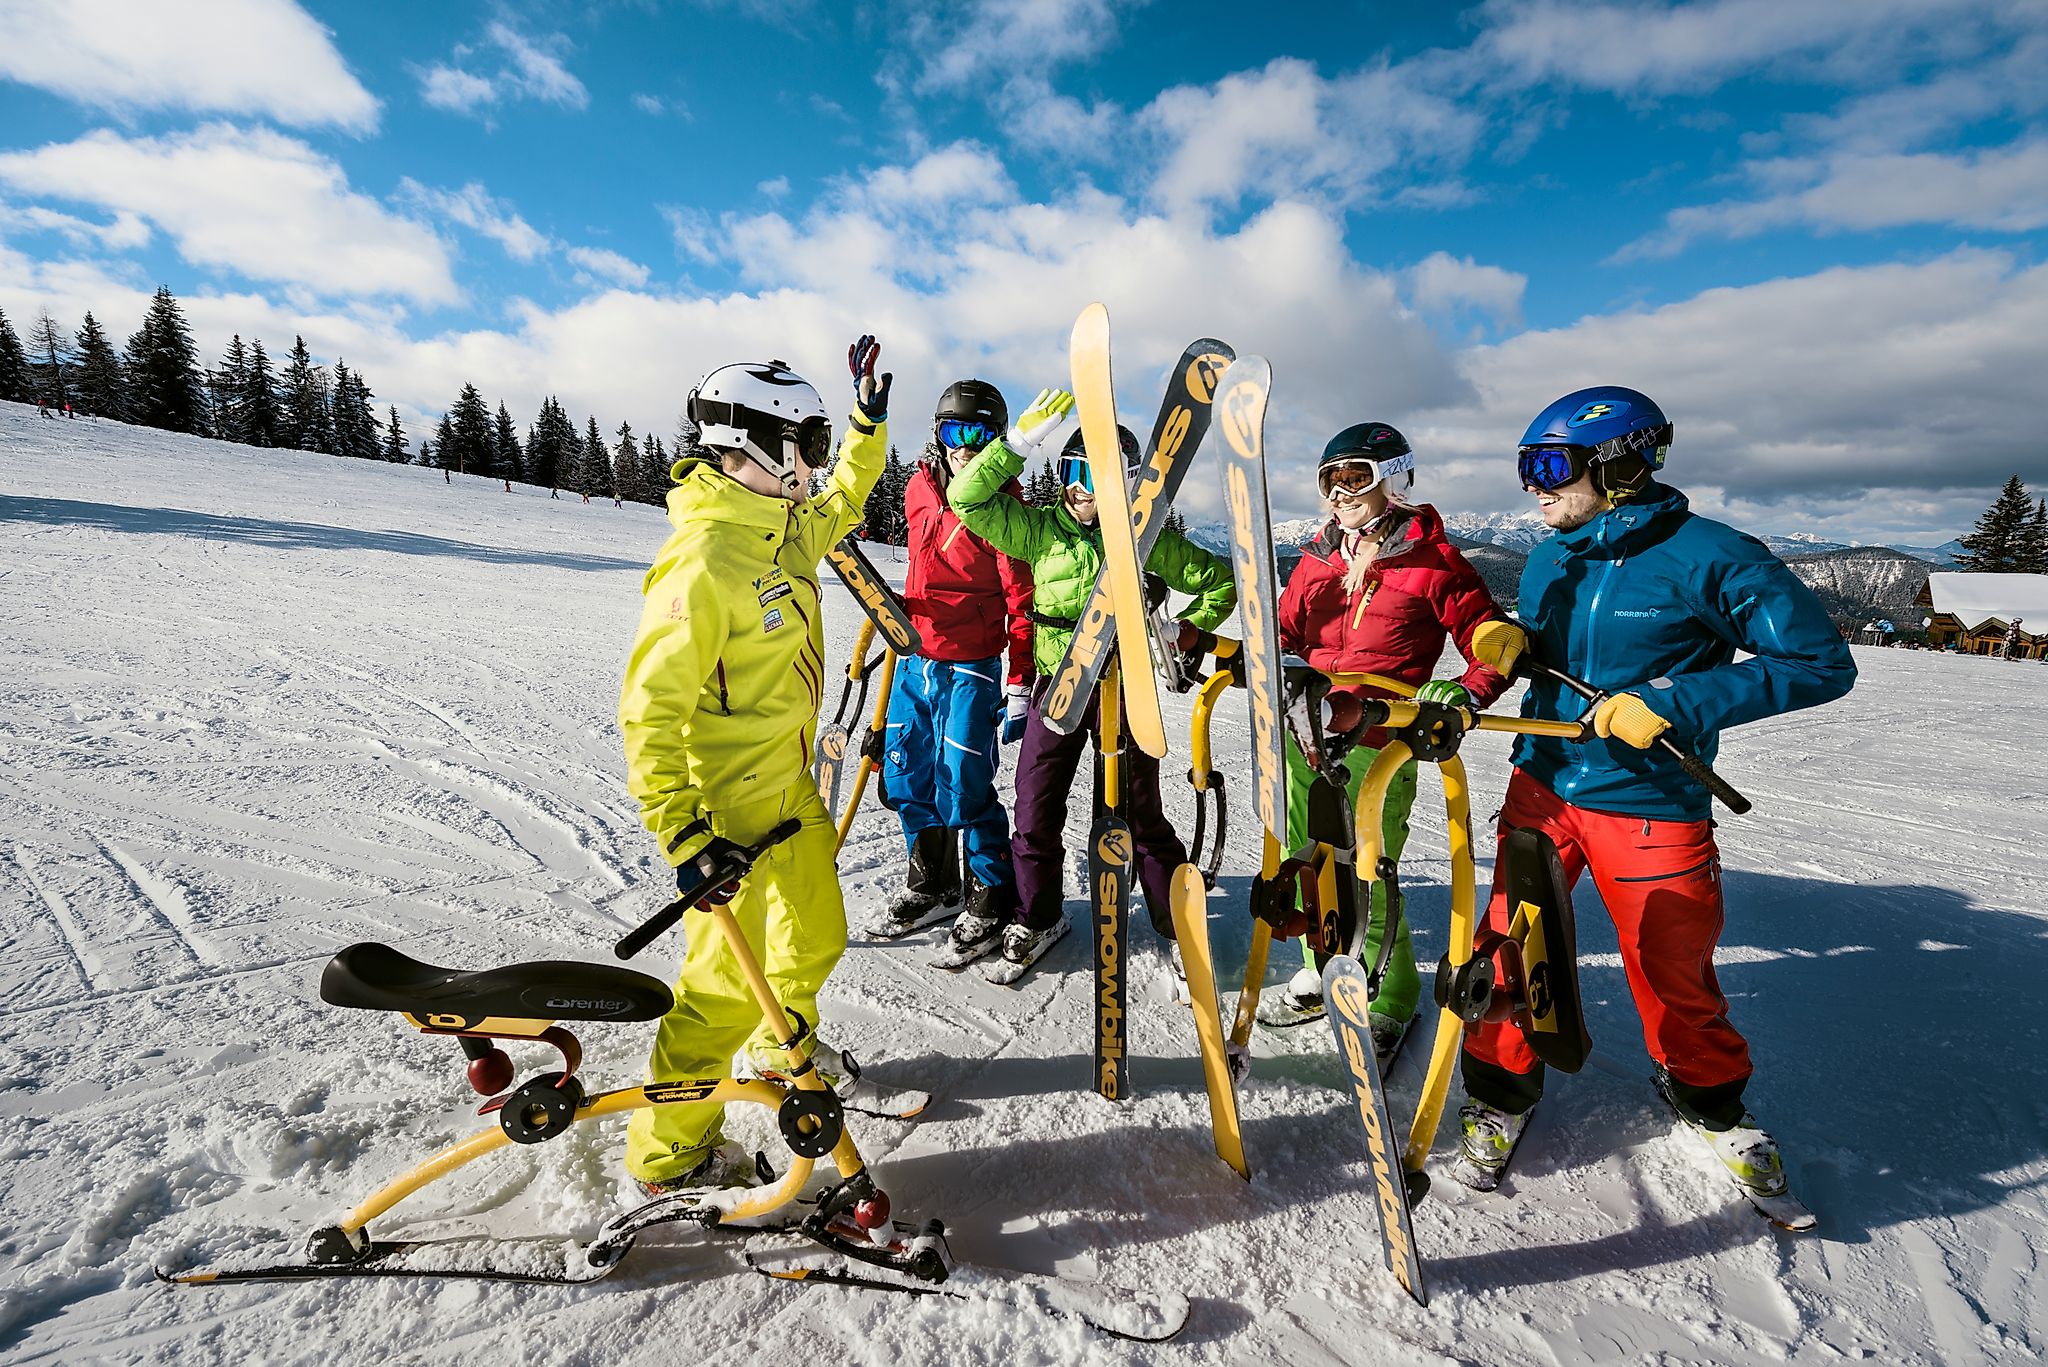 <p>Snowbiken ist absolut trendy. Dieser Pisten-Funsport sorgt für jede Menge Spaß und Abwechslung in euren Winterurlaub.</p>